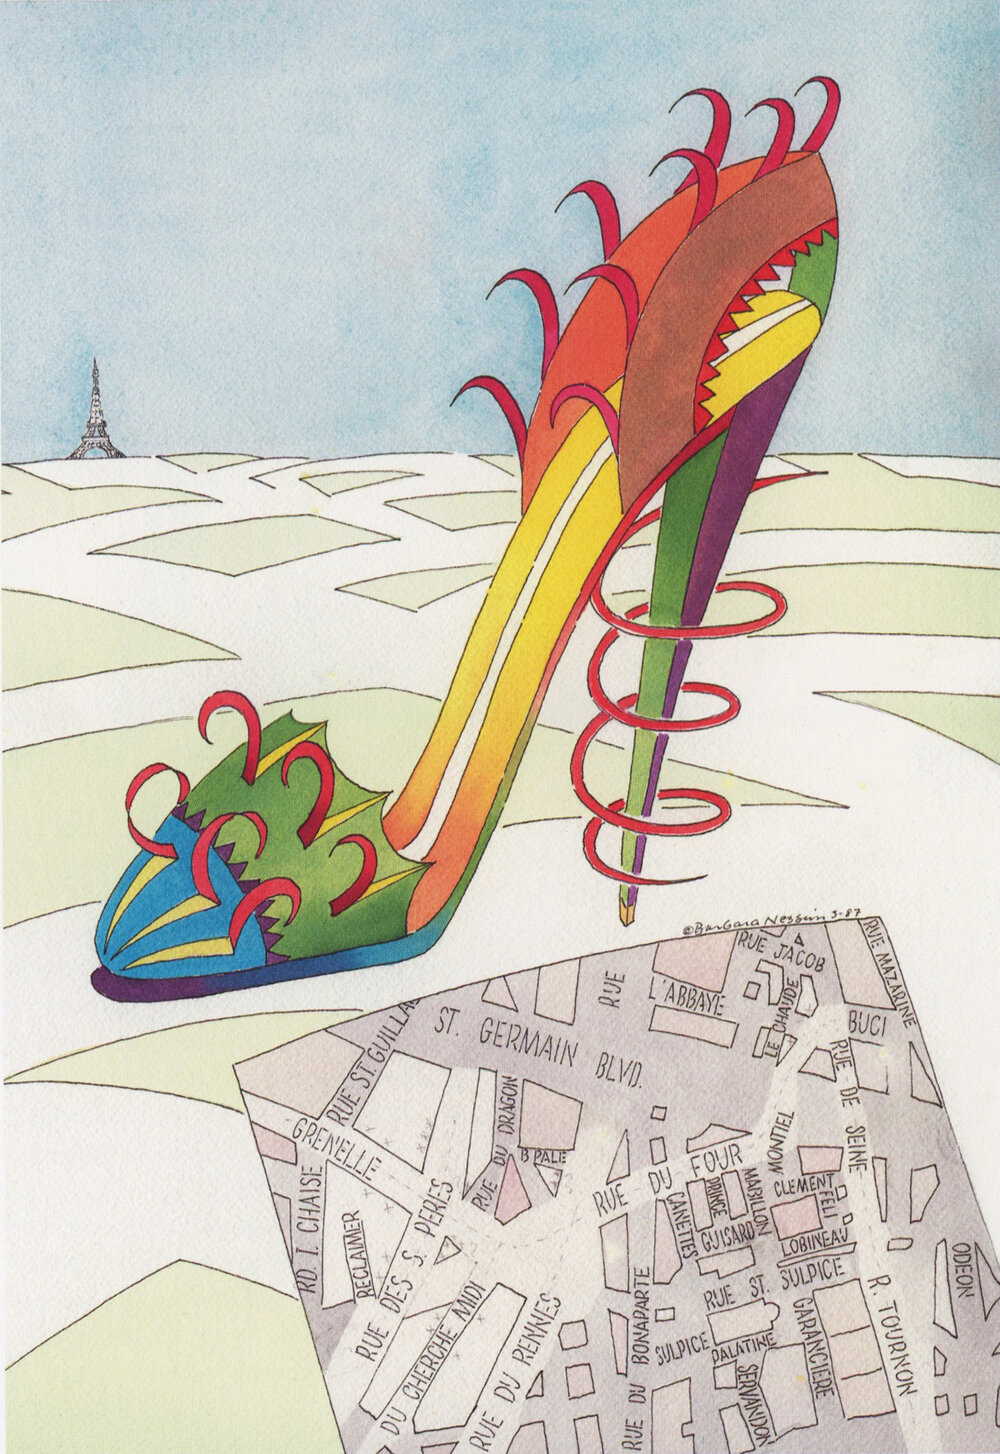 La Grande Shoe Route, 1988